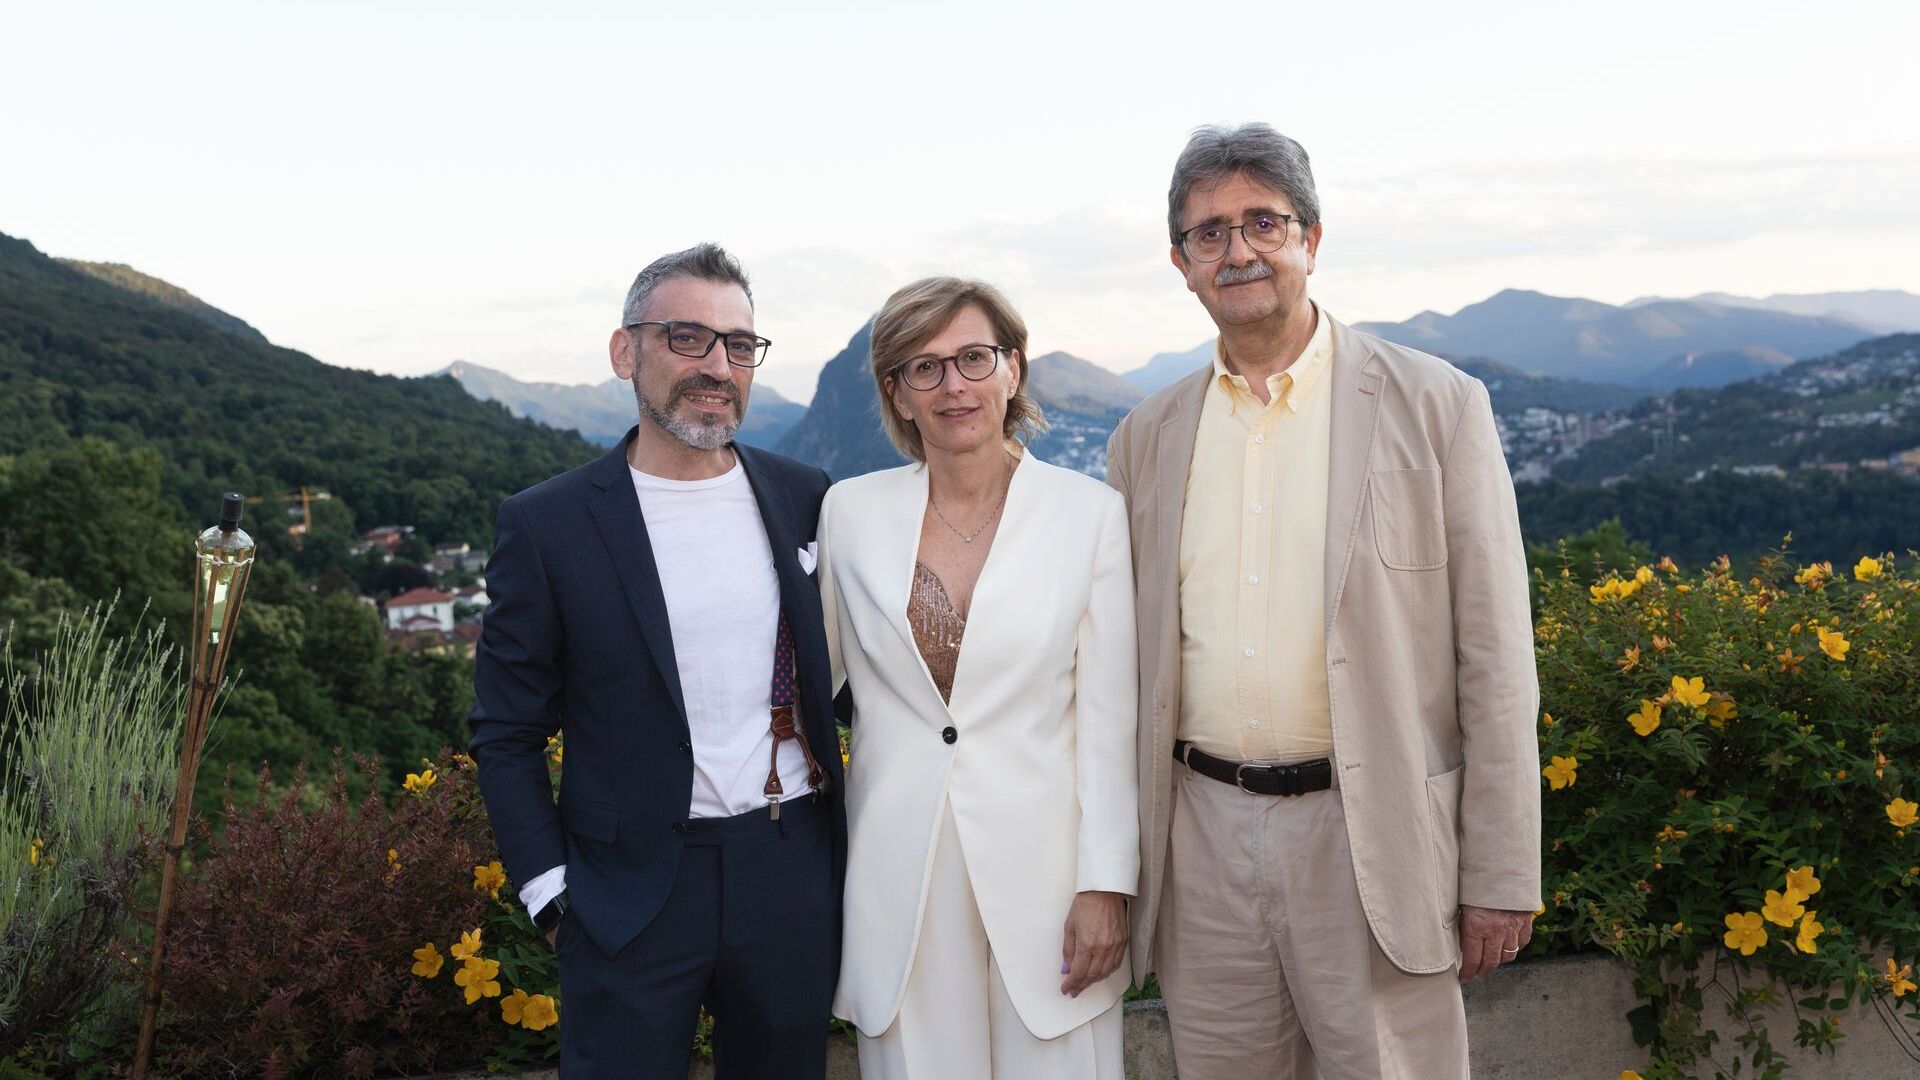 Luca Mauriello và Cristina Giotto, lần lượt là Phó Chủ tịch và Chủ tịch của ated-ICT Ticino, cùng đối tác Silvano Marioni